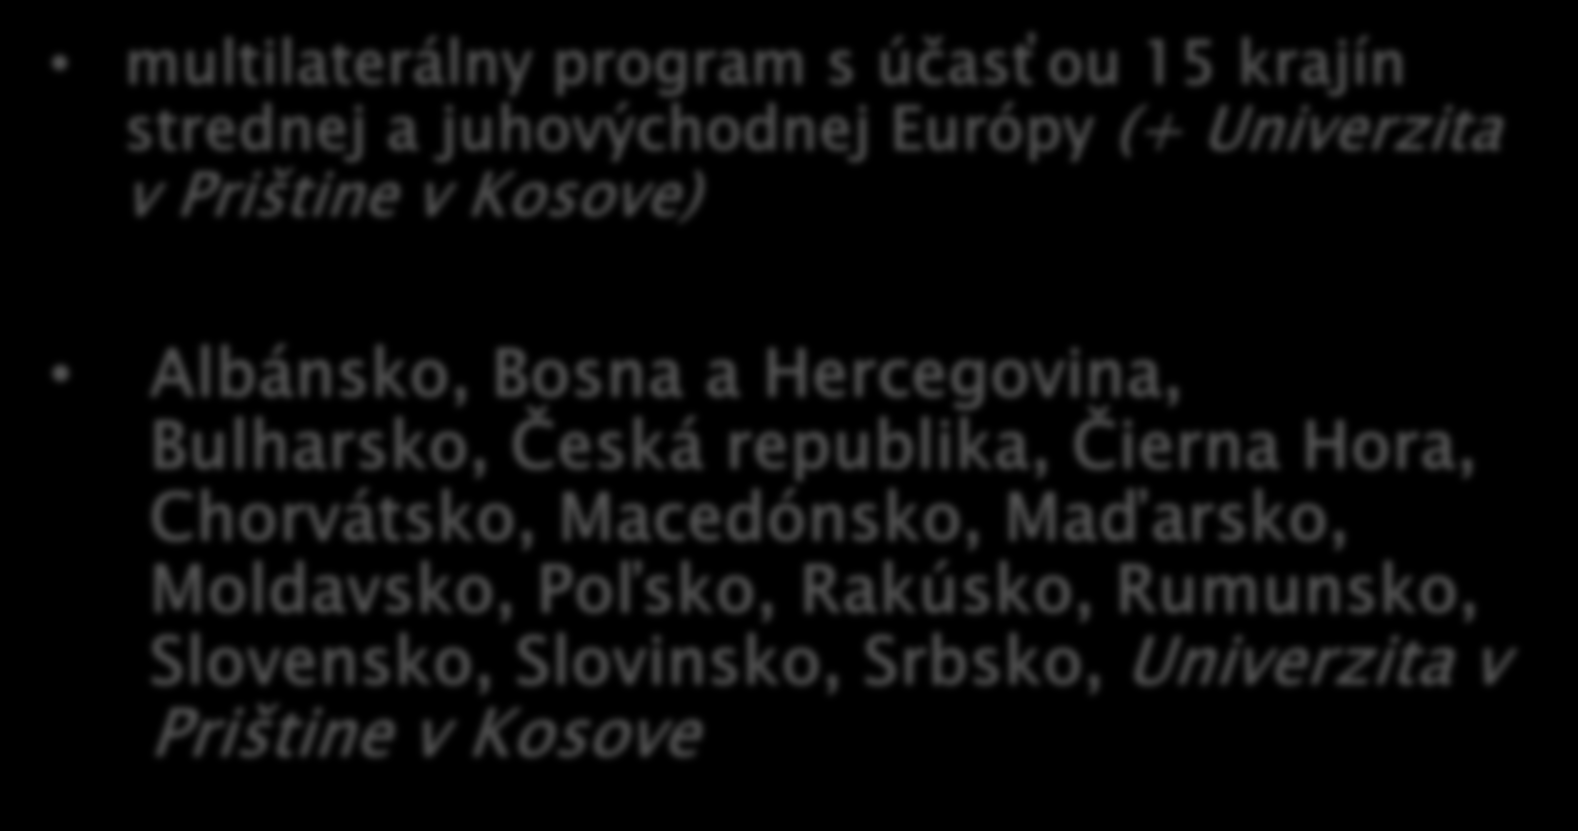 Členské krajiny programu multilaterálny program s účasťou 15 krajín strednej a juhovýchodnej Európy (+ Univerzita v Prištine v Kosove) Albánsko, Bosna a Hercegovina,